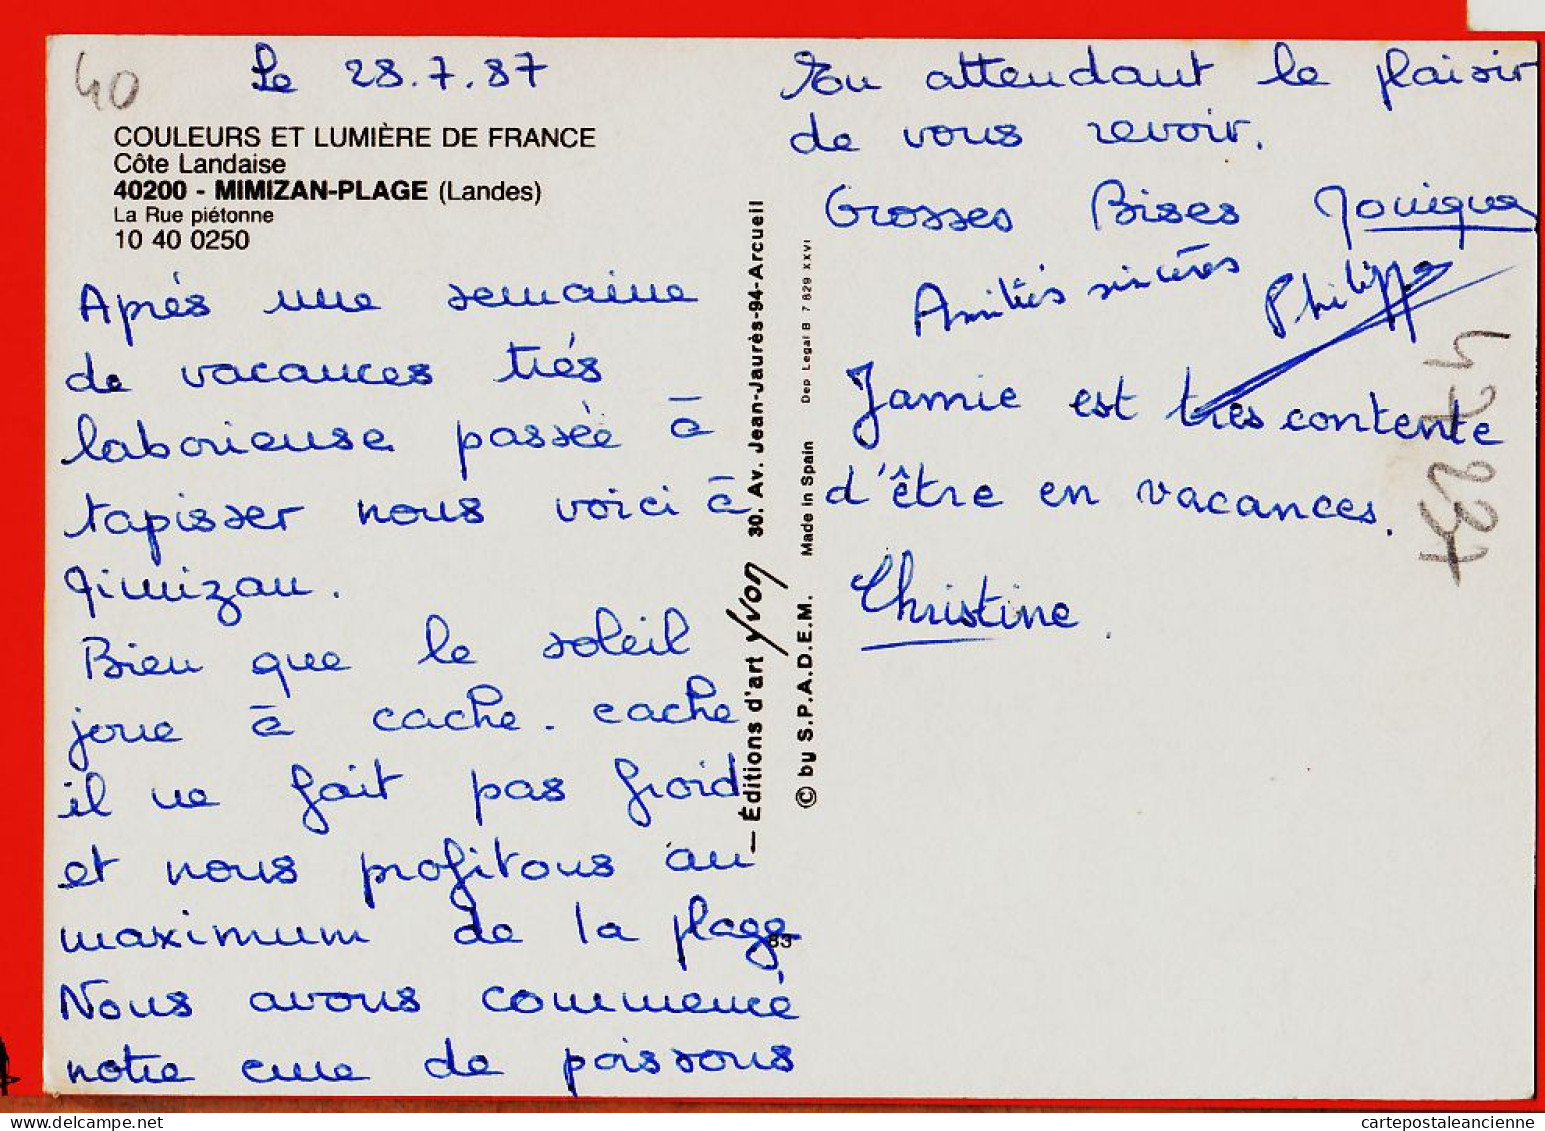 01341 / MIMIZAN-PLAGE 40-Landes Epicerie Boutique Landaise Presse-Journaux La Rue Piétonne 1980s YVON  - Mimizan Plage